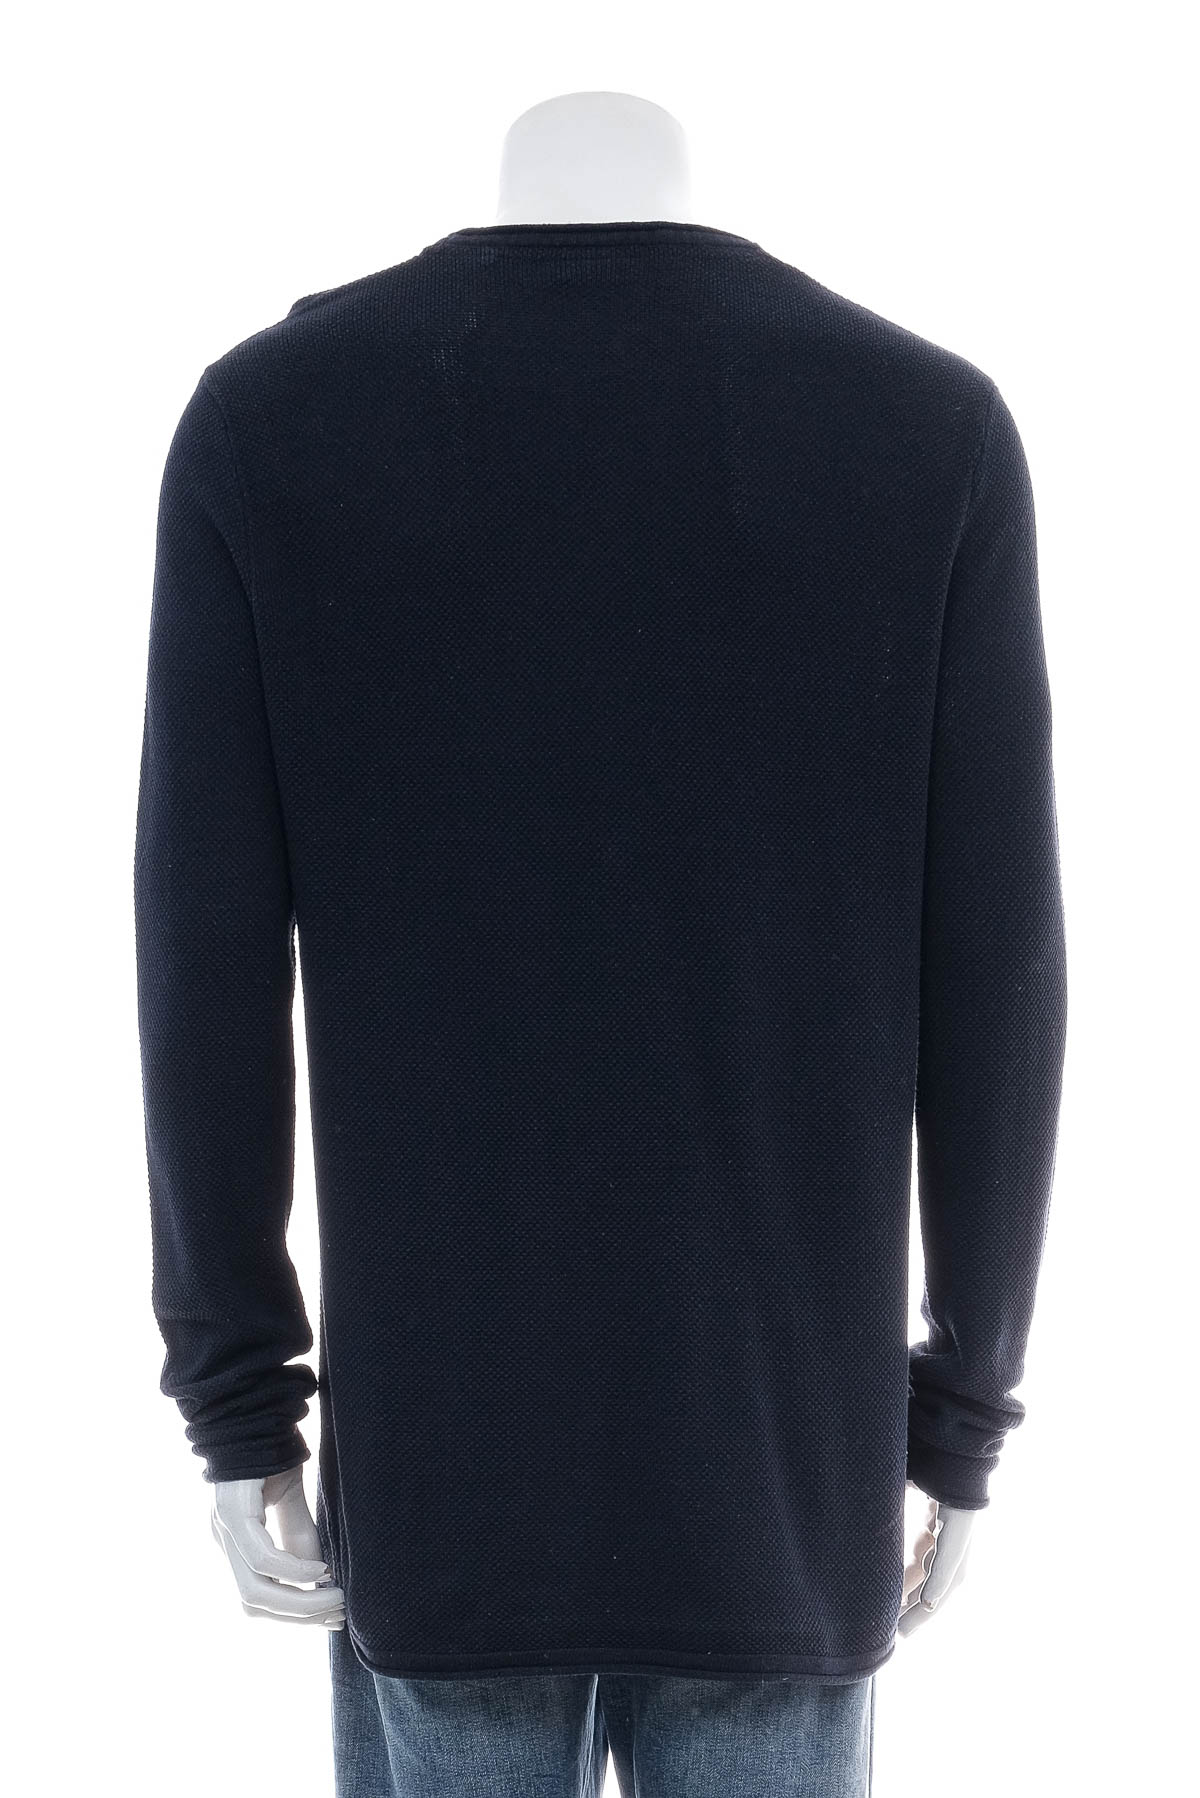 Men's sweater - Identic - 1